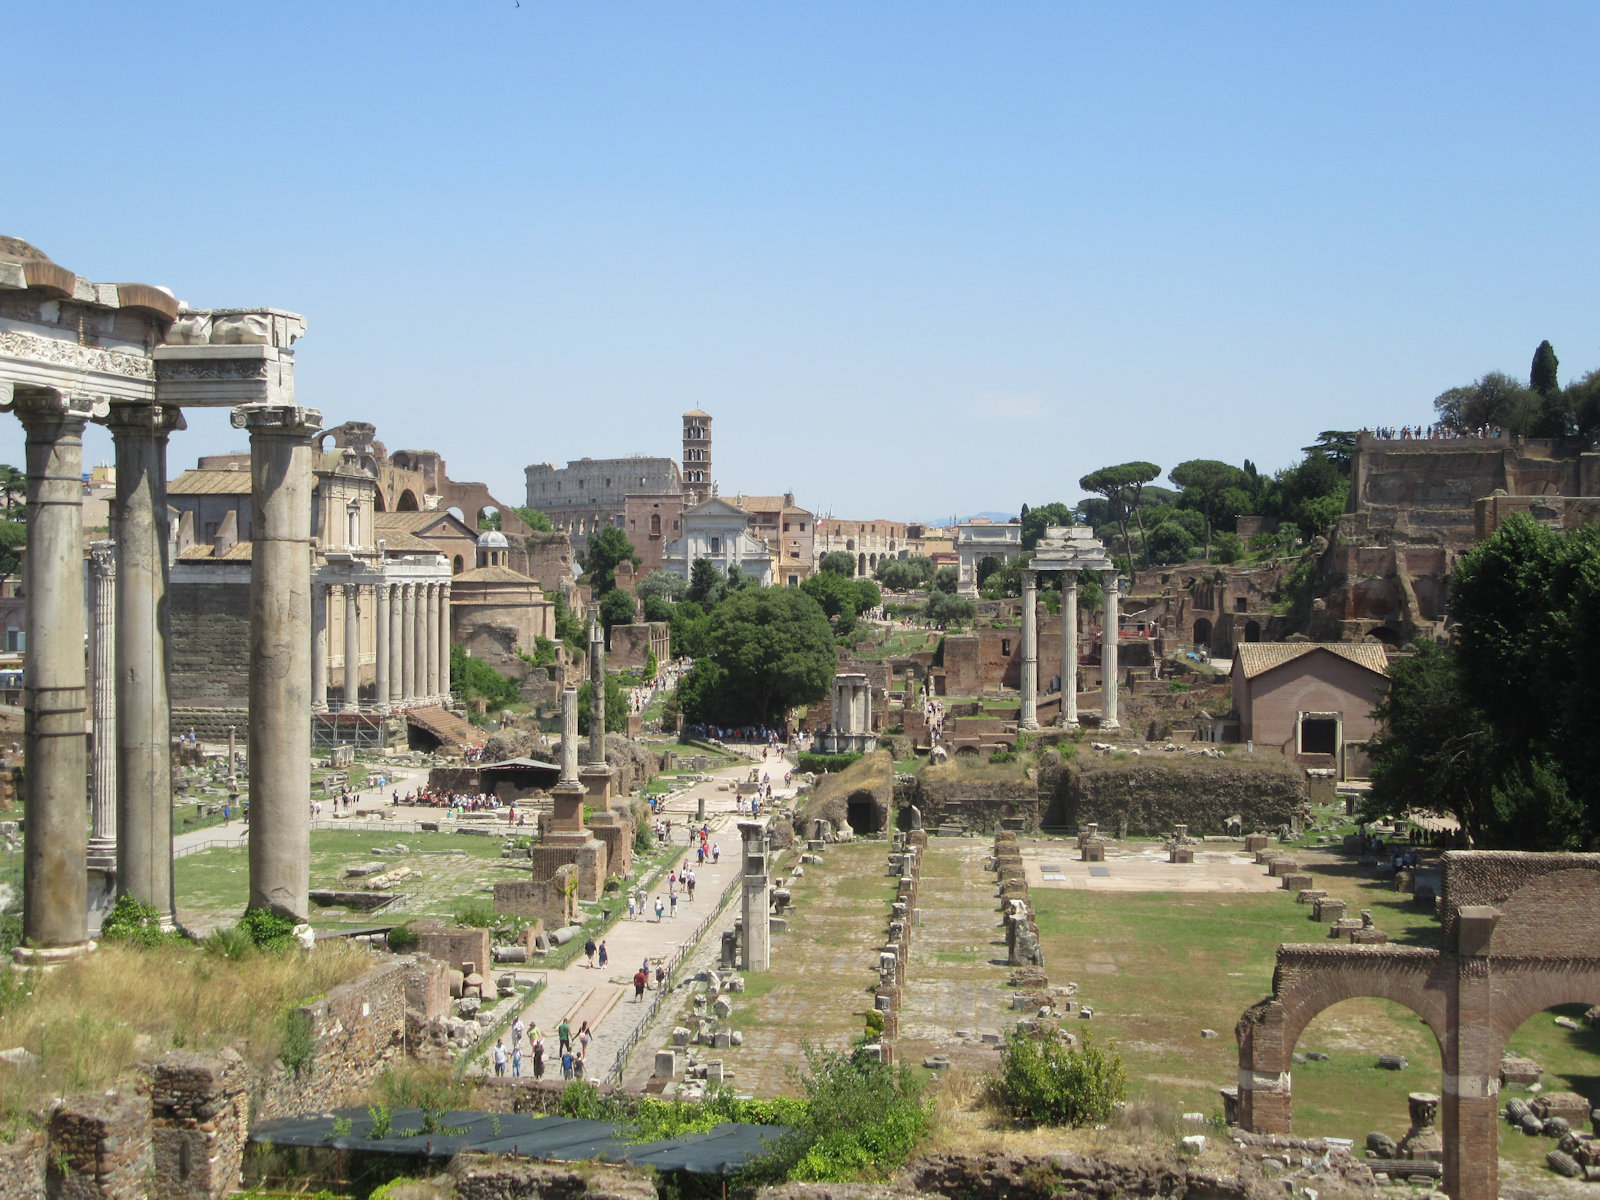 Blick auf die Ruinen des Forum Romanum in Rom